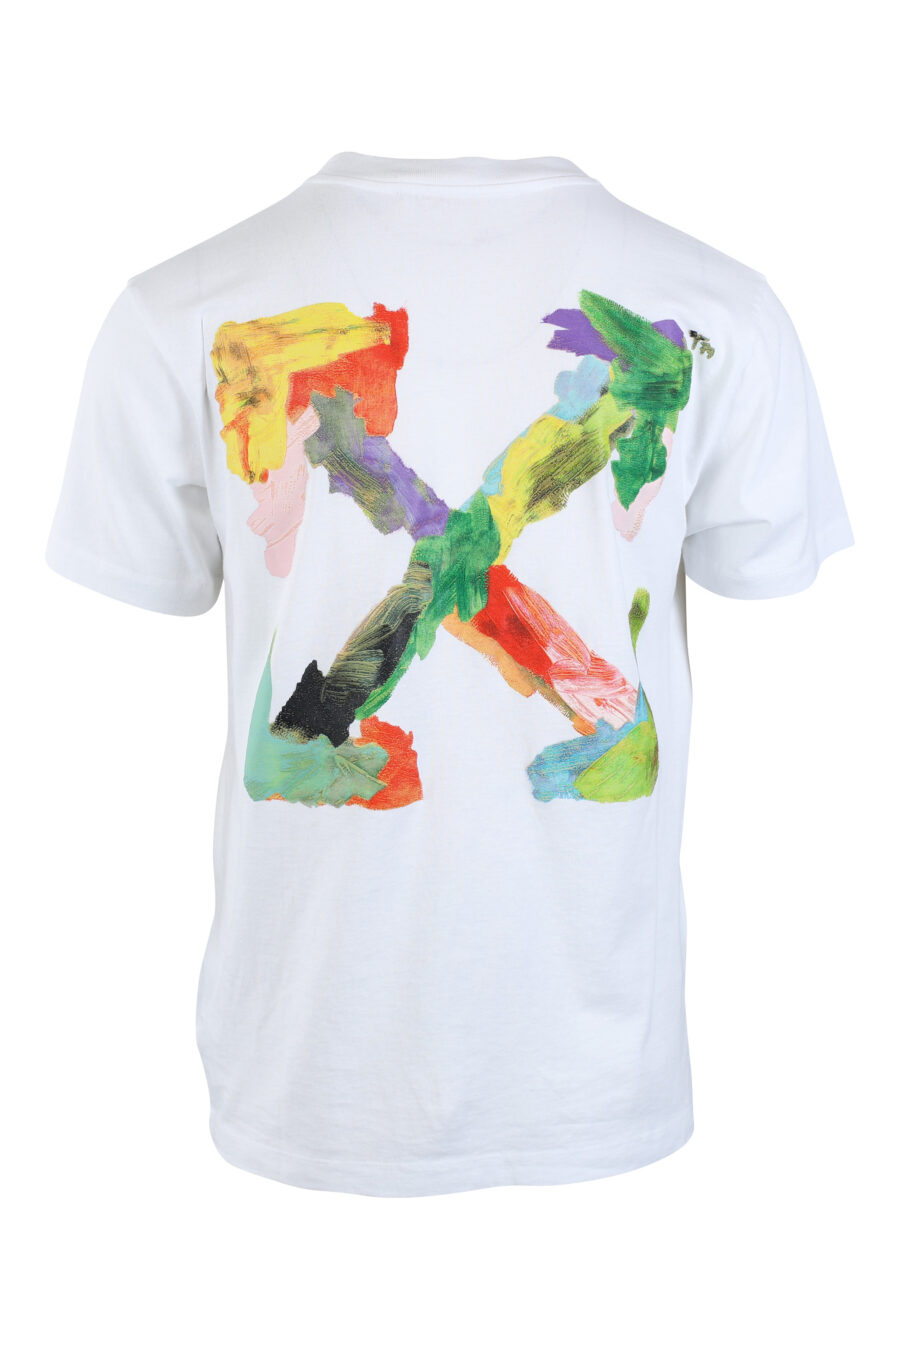 T-shirt blanc avec maxilogo "arrow" multicolore dans le dos - IMG 2617